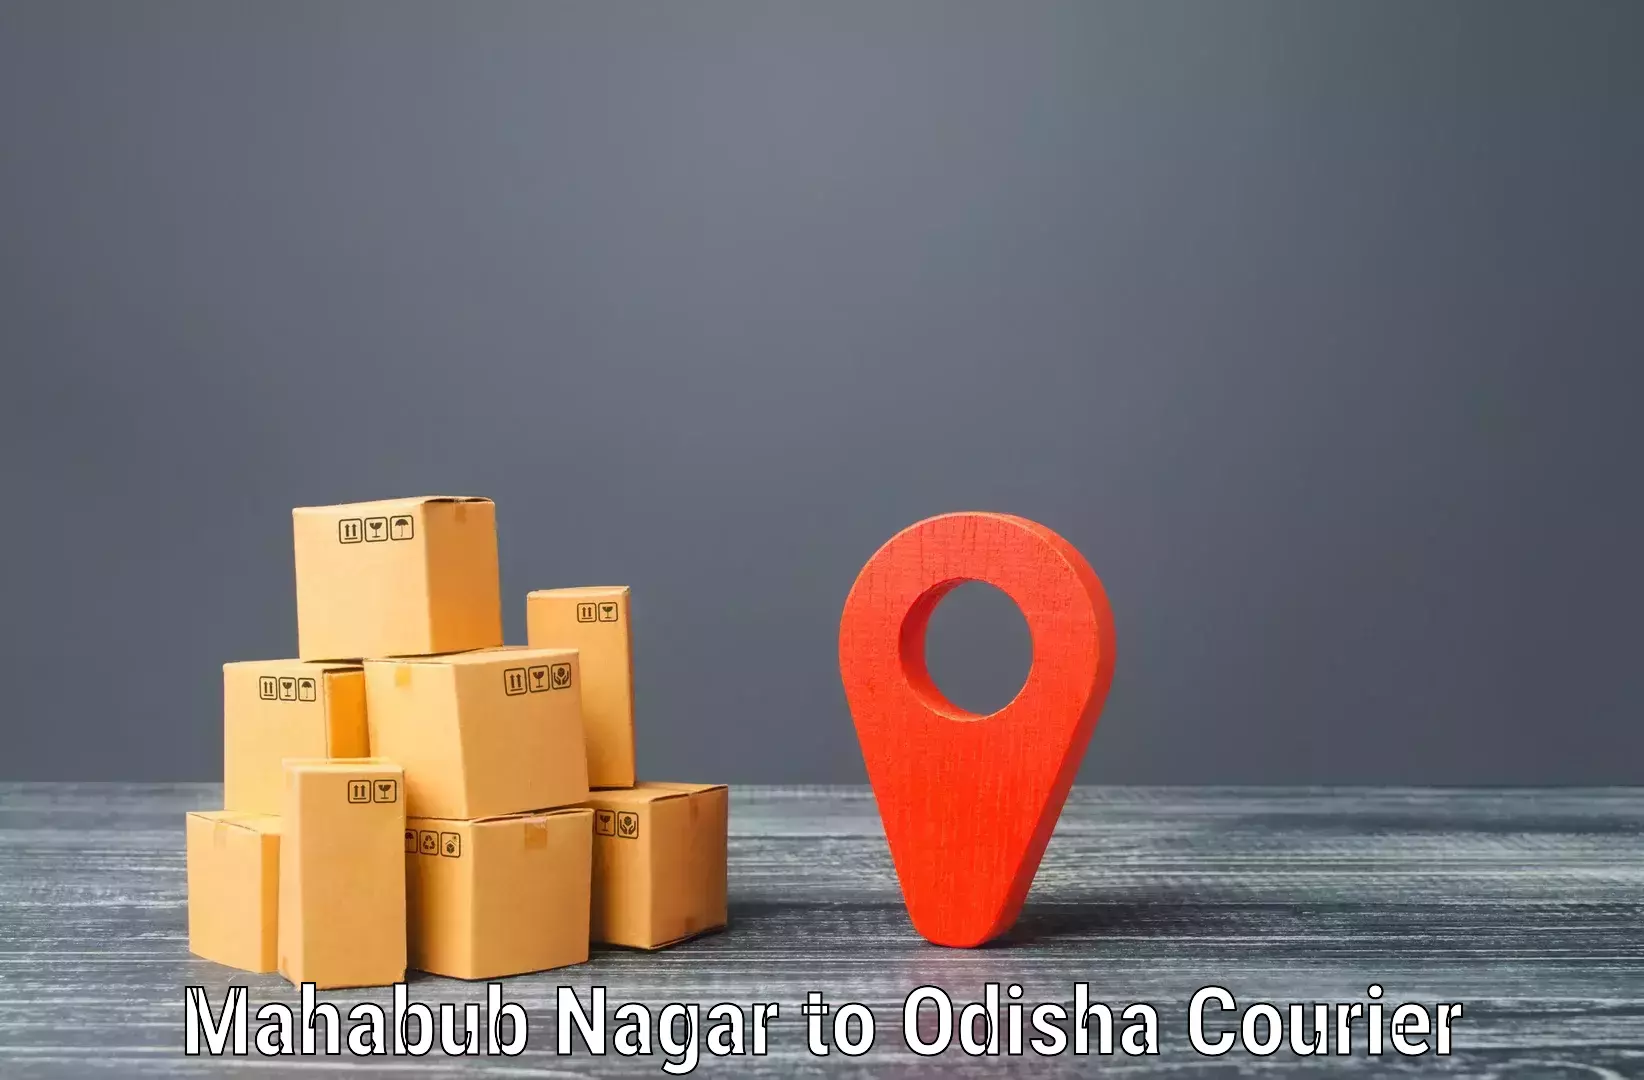 Holiday shipping services Mahabub Nagar to Rairakhol